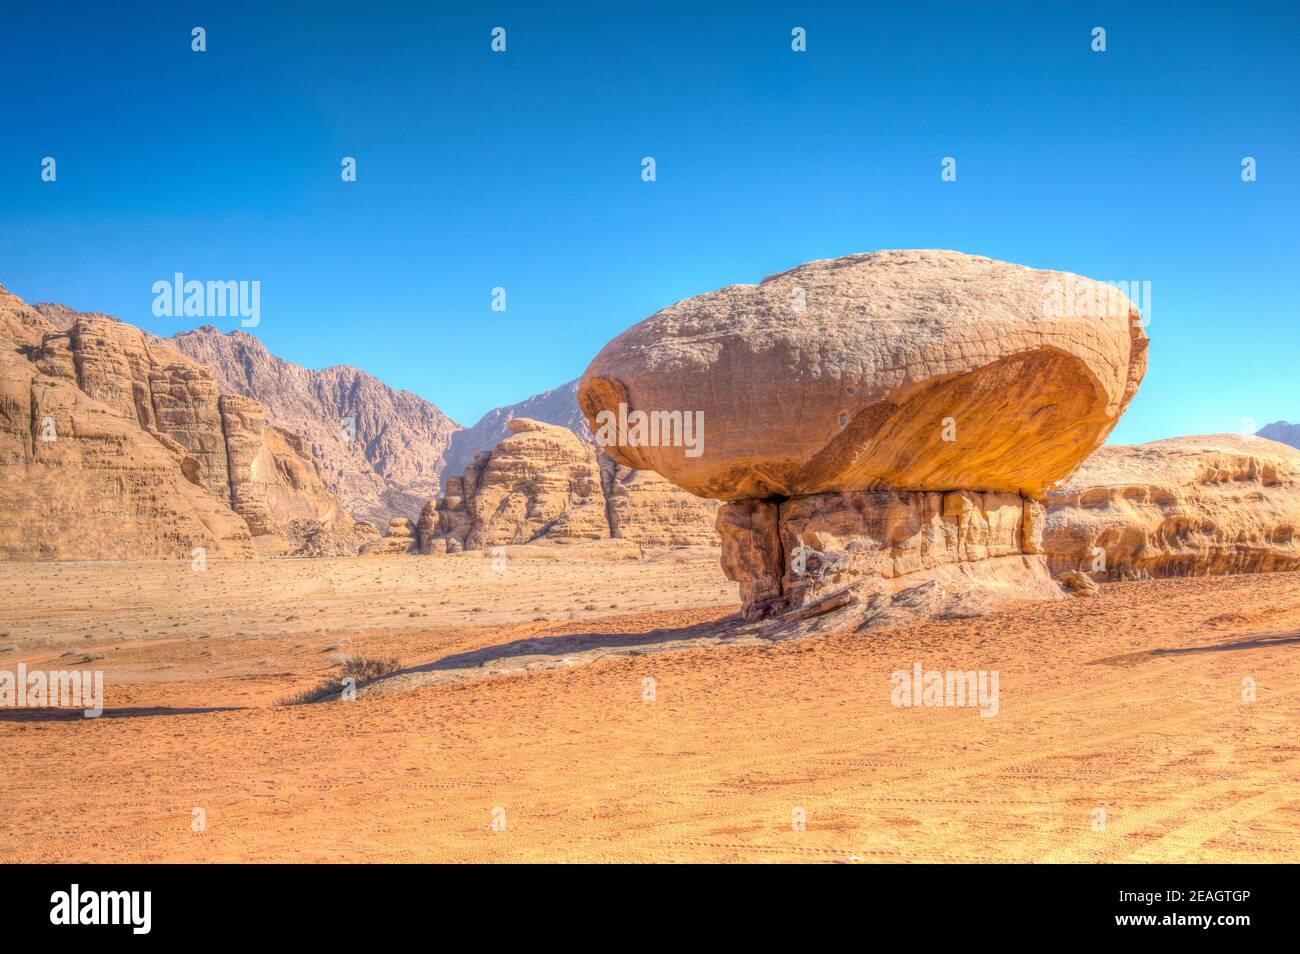 Mushroom rock at Wadi Rum desert in Jordan Stock Photo